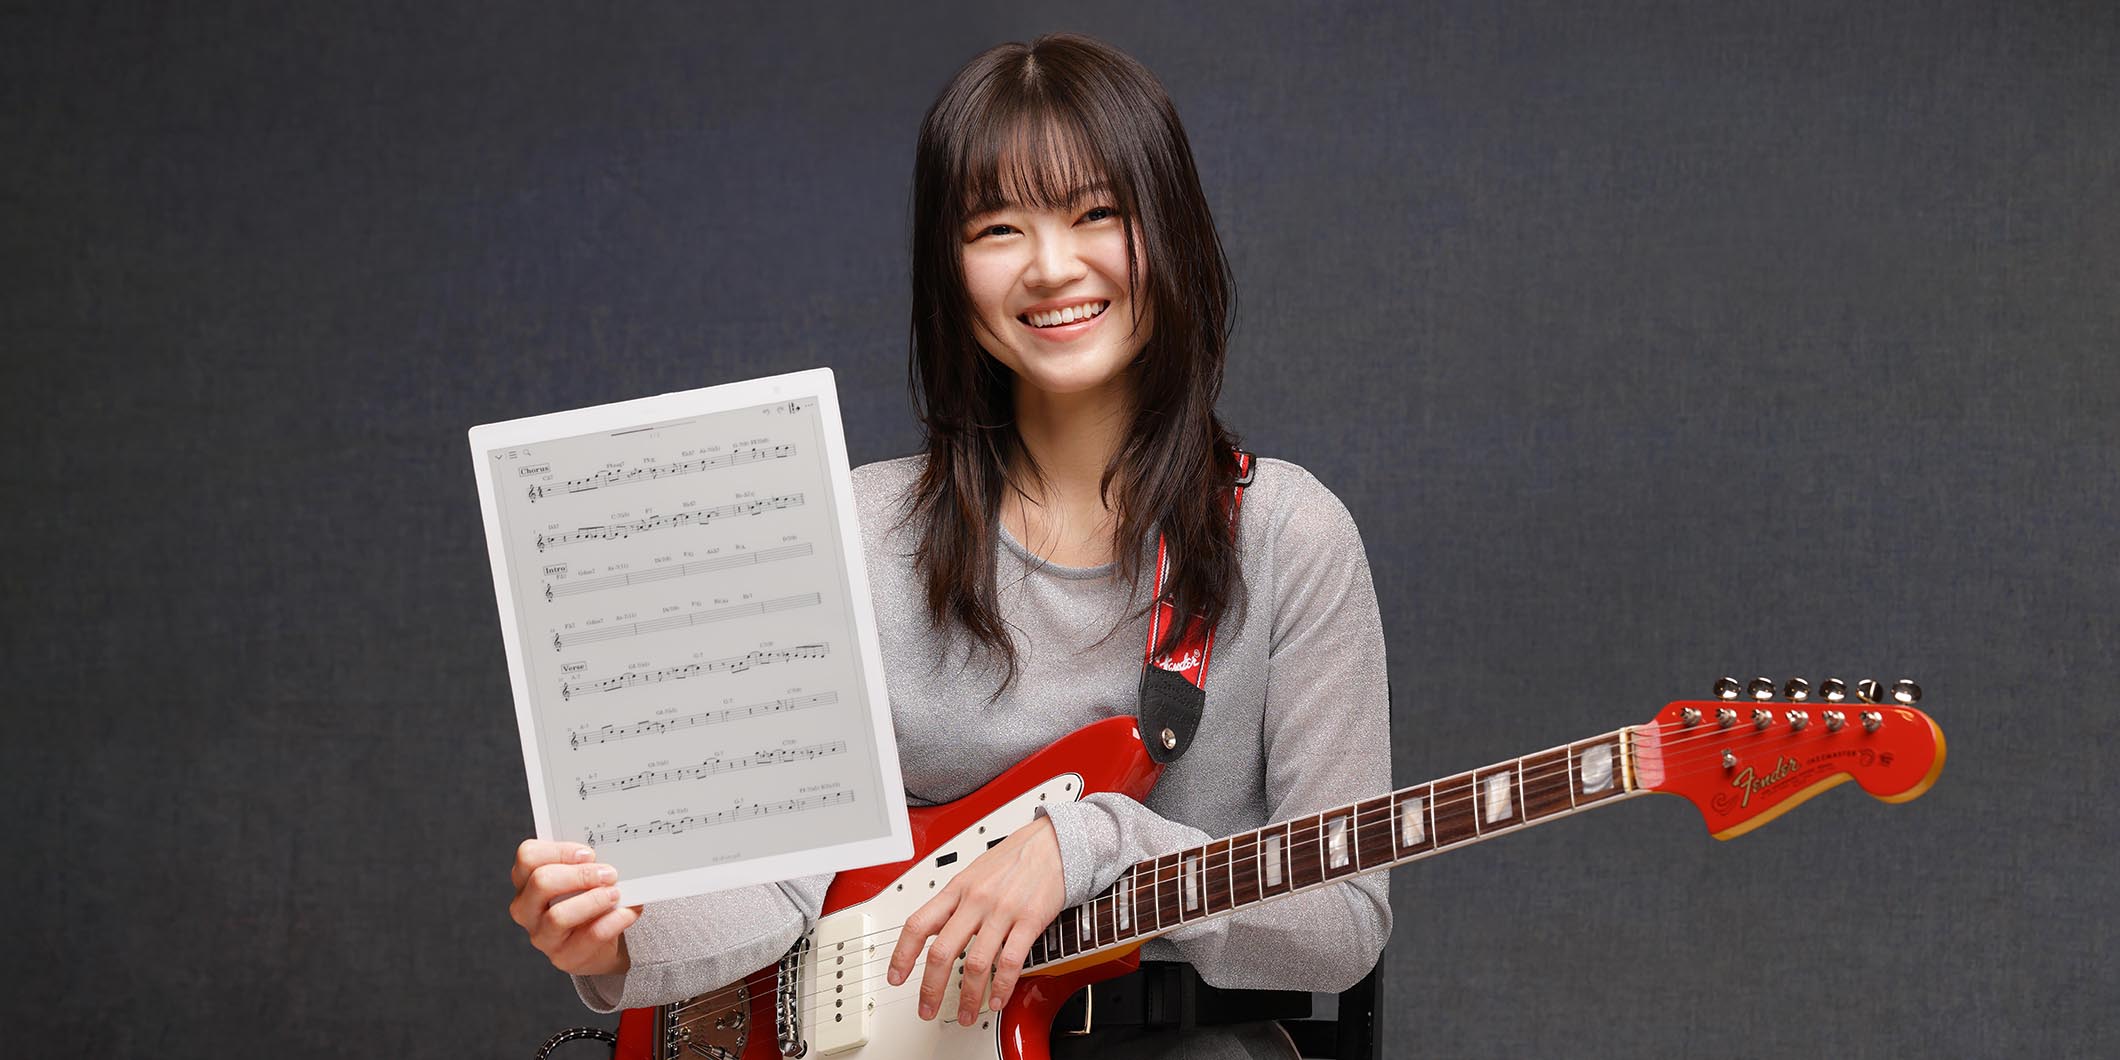 ペーパーレスな演奏環境を実現する“富士通QUADERNO”×ギタリストの可能性